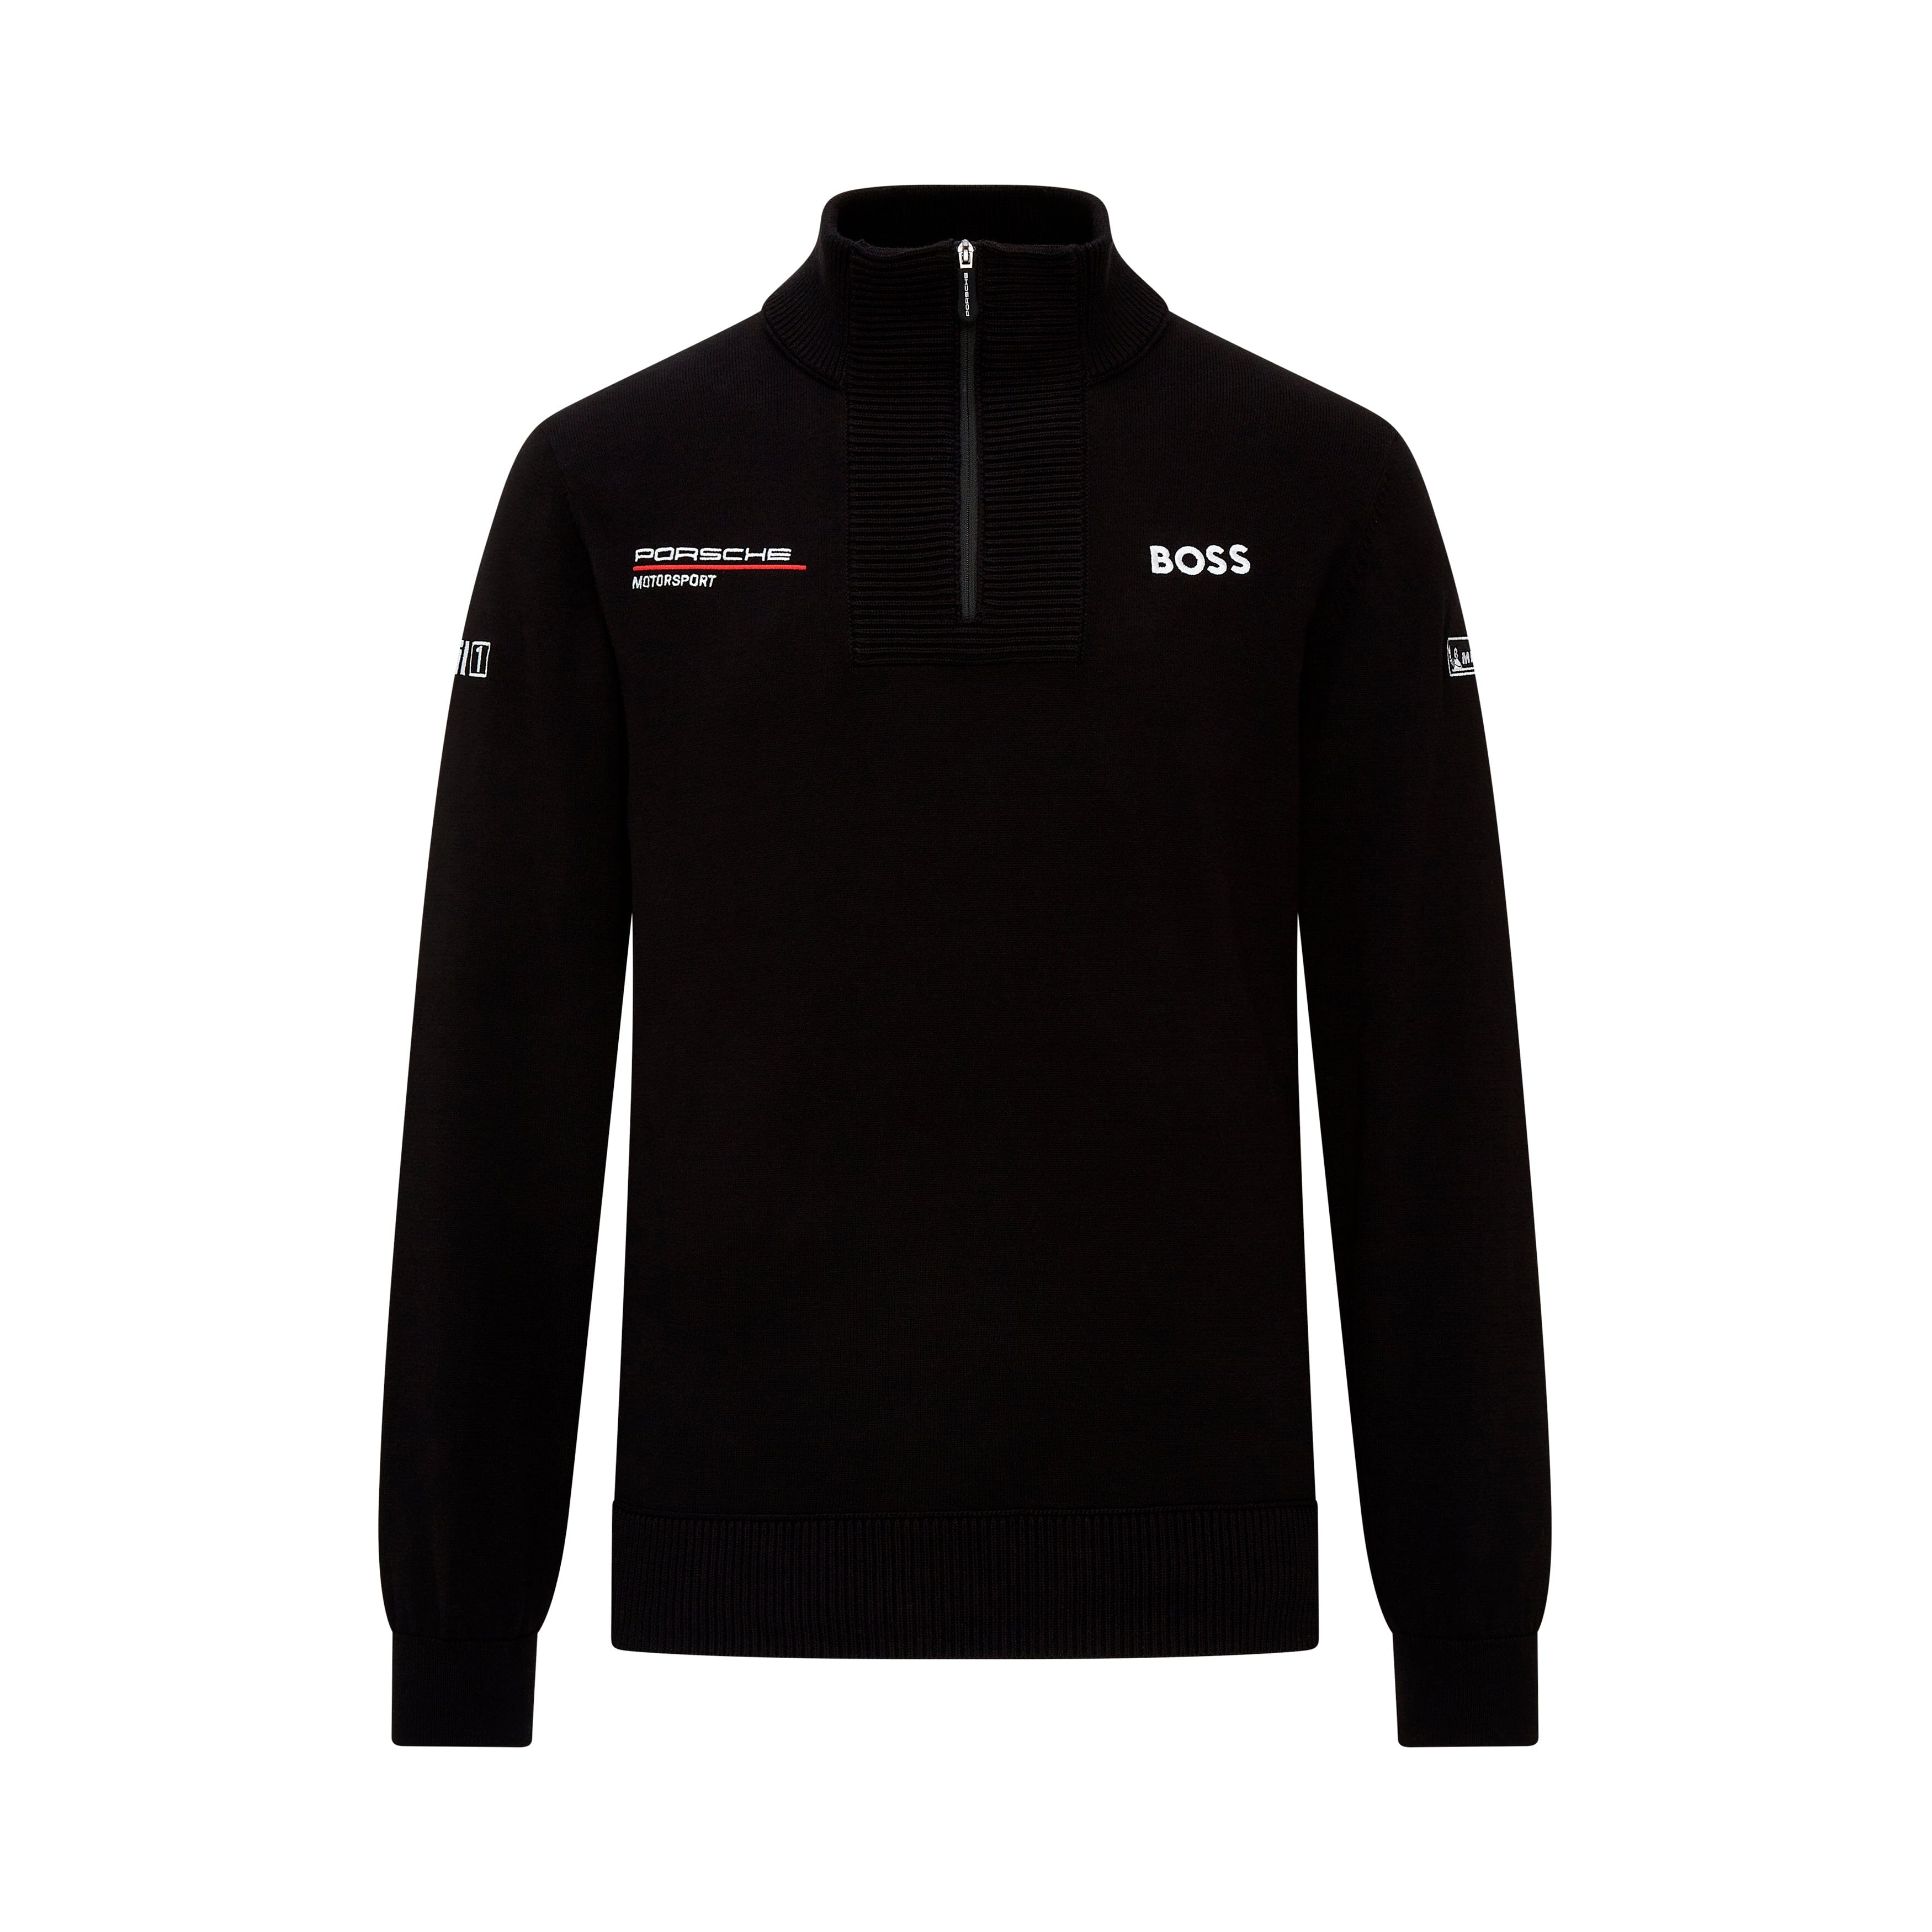 Porsche Motorsport Team Knitted Sweater - Black